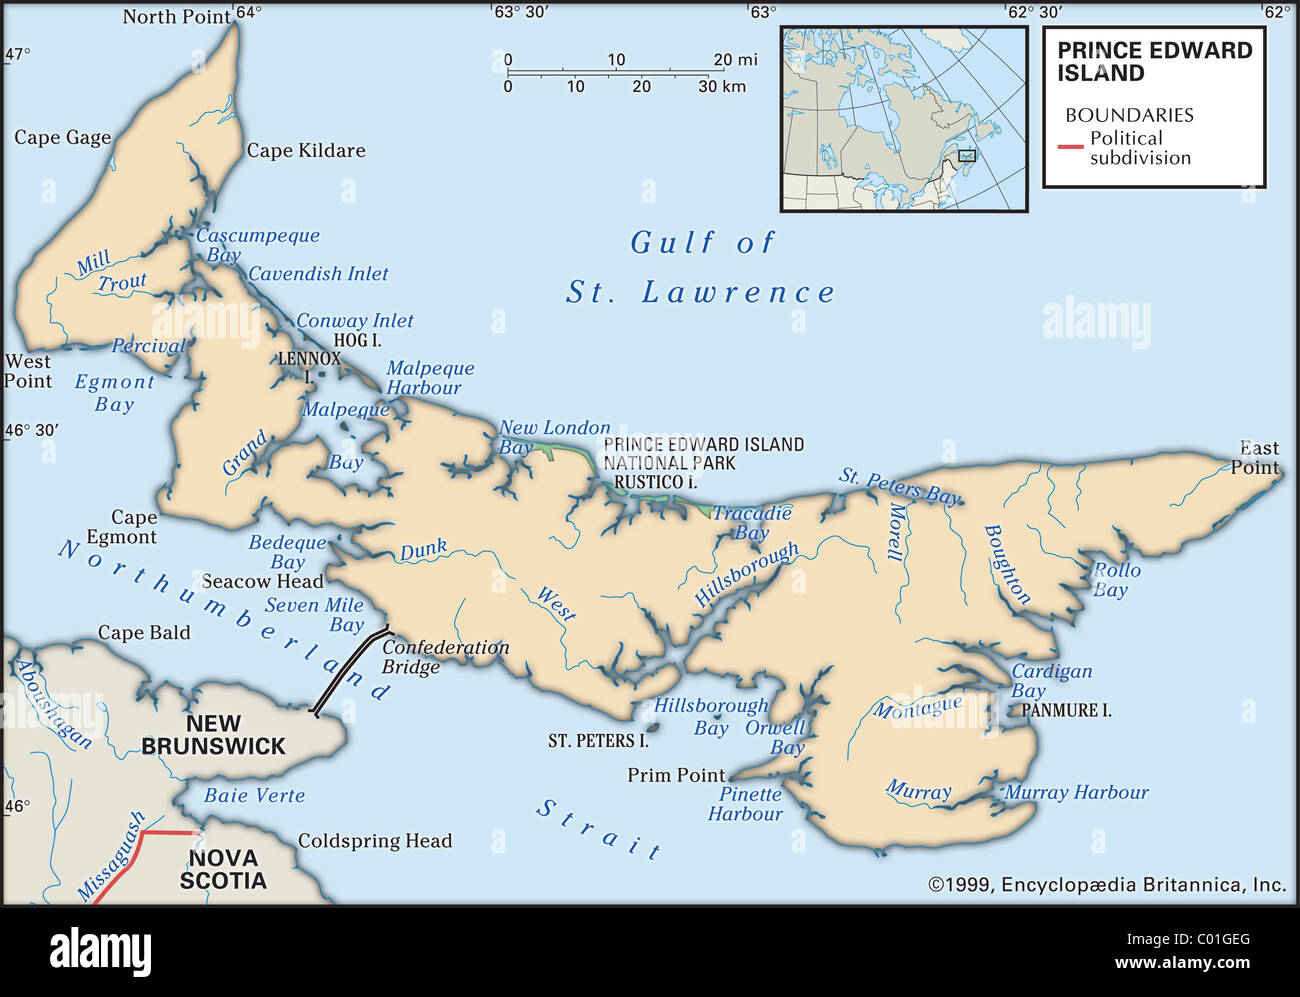 Cartina Fisica della Prince Edward Island Foto Stock